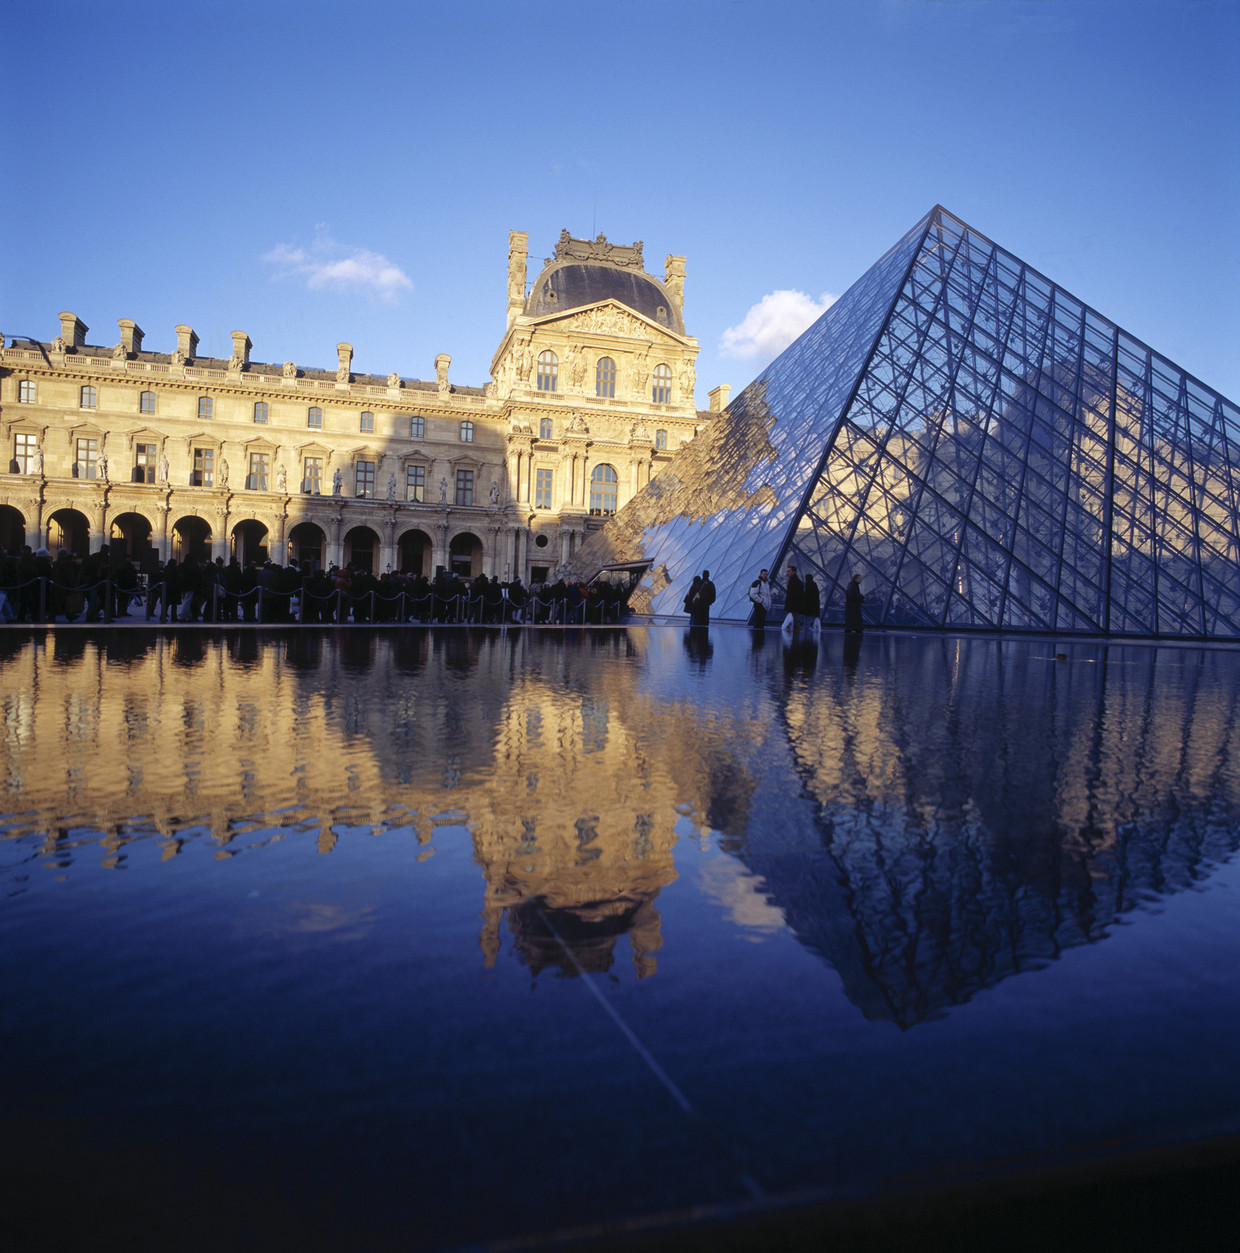 Het Louvre. 'Ik ben een fan van Ieoh Ming Pei, die de piramide heeft ontworpen.' Beeld Getty Images